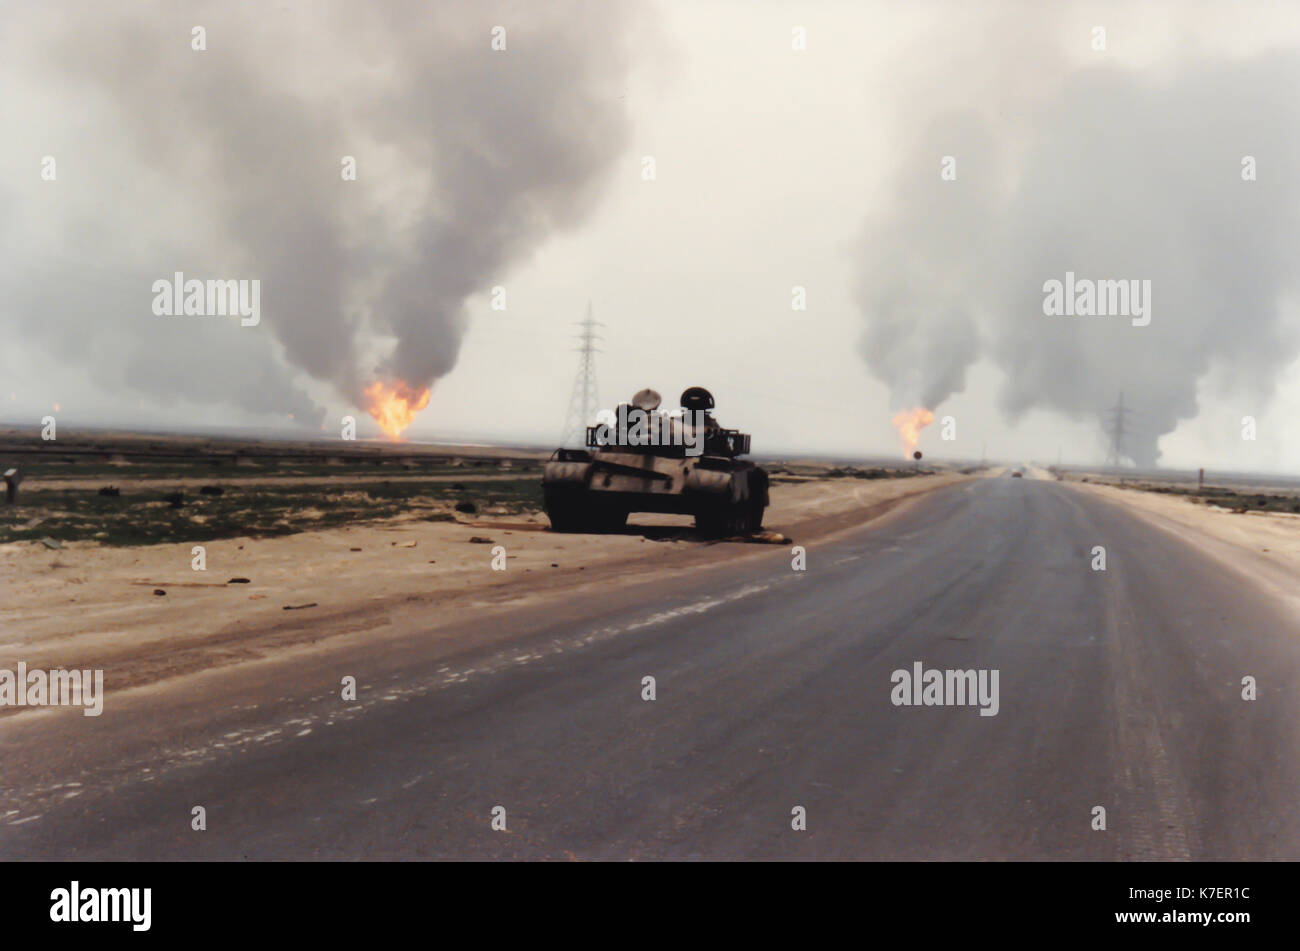 Imagen histórica de abandonded depósito en carretera de buring campo petrolero en después de la Operación Tormenta del Desierto tras la guerra del Golfo Pérsico en Kuwait. Foto de stock